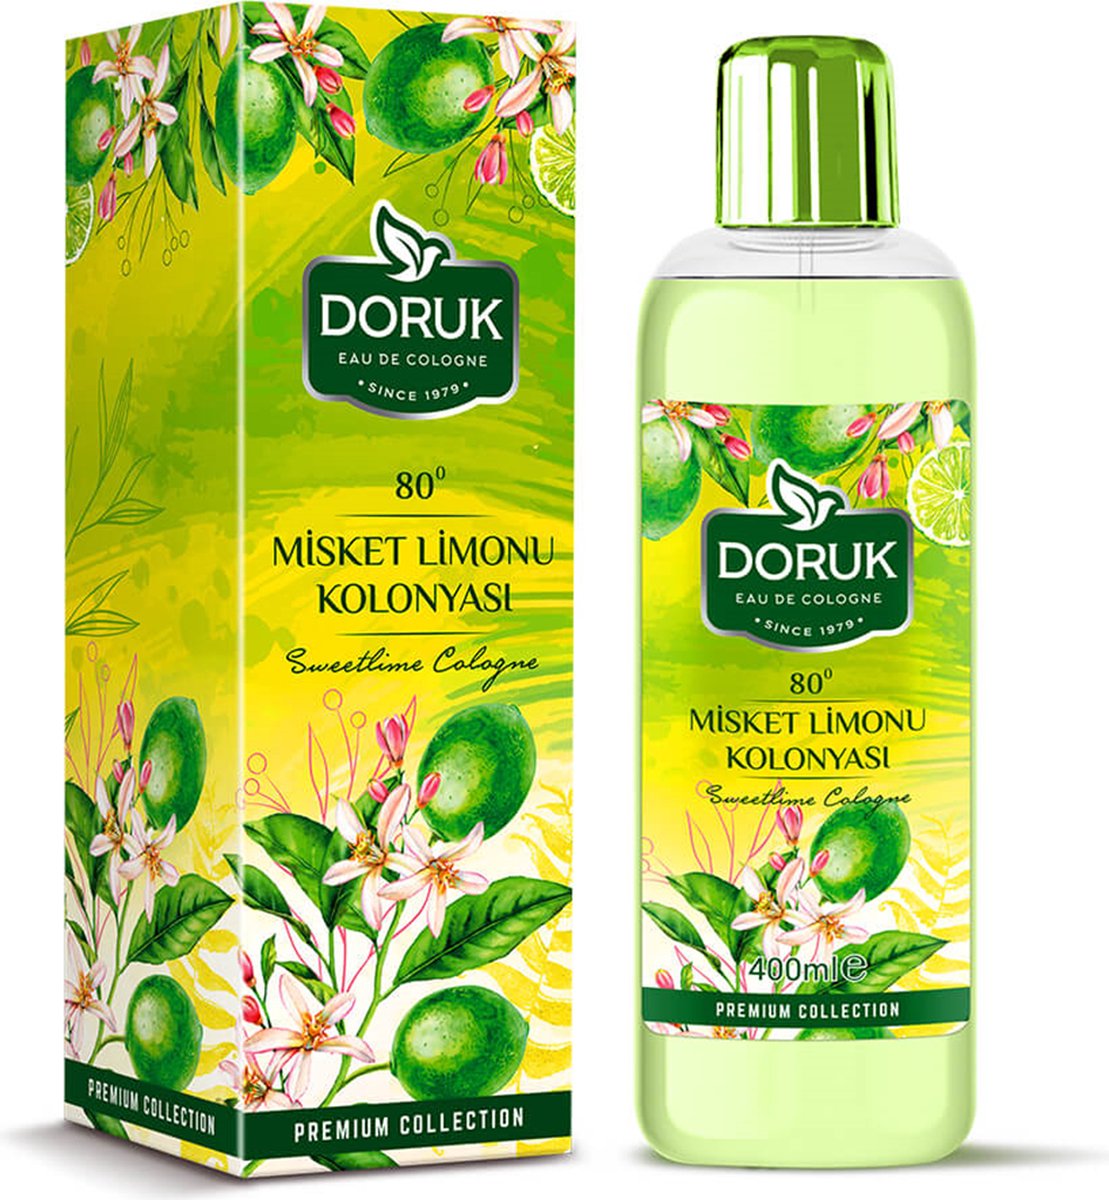 Doruk - Eau de cologne 400ml - 80° alcohol - Zoete limoen cologne - Optimale desinfectie van handen